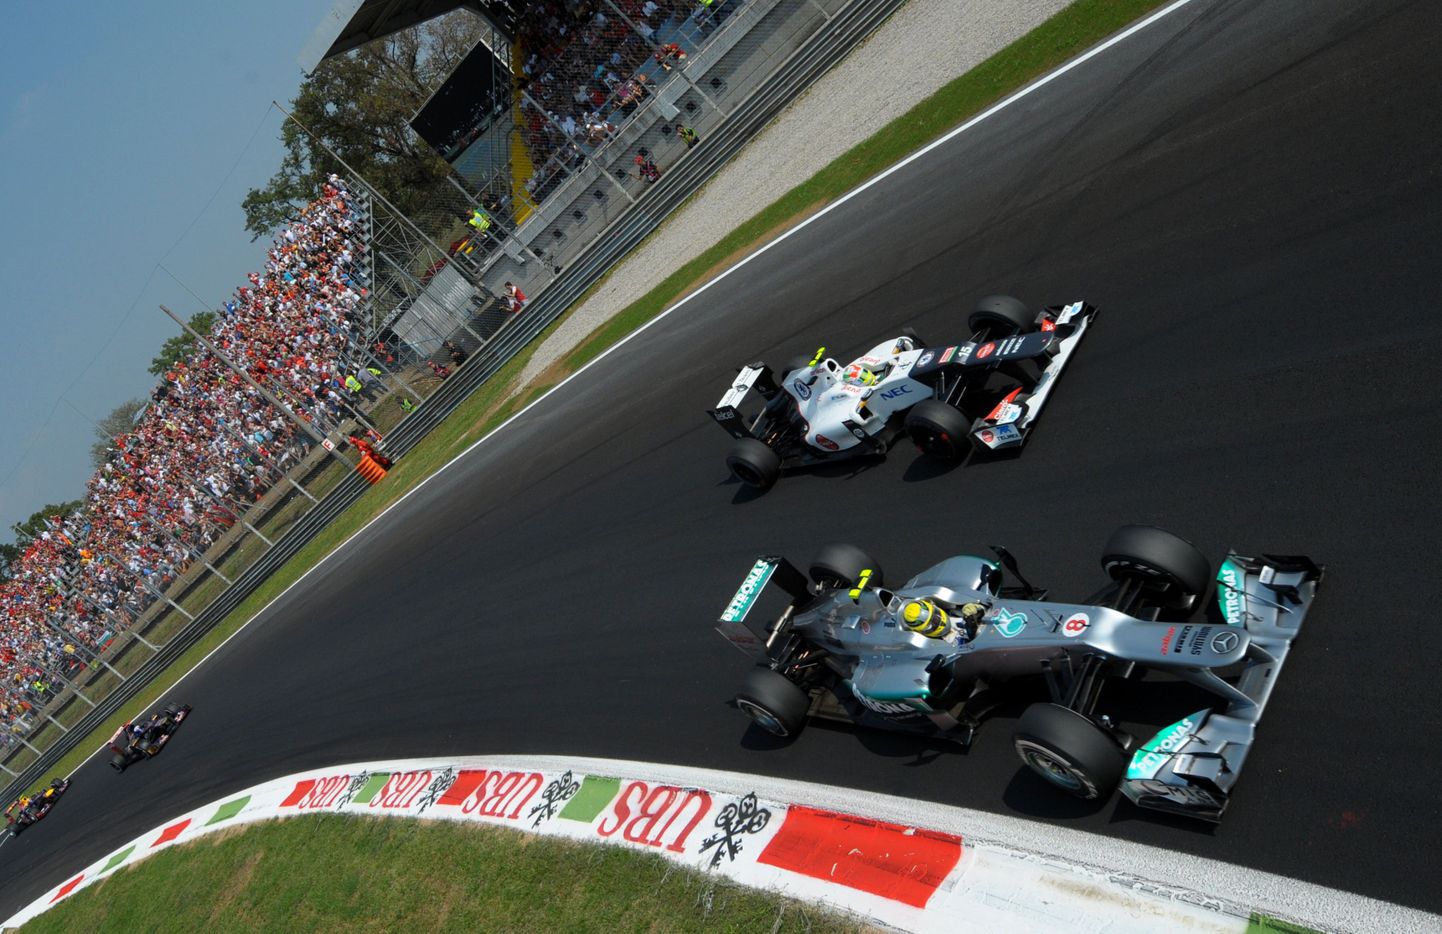 Nico Rosberg ja Sergio Perez sisenevad 2012. aasta Itaalia vormel-1 etapil Monza ringrajal Parabolica kurvi. Paremal on näha kruusane väljasõiduala.